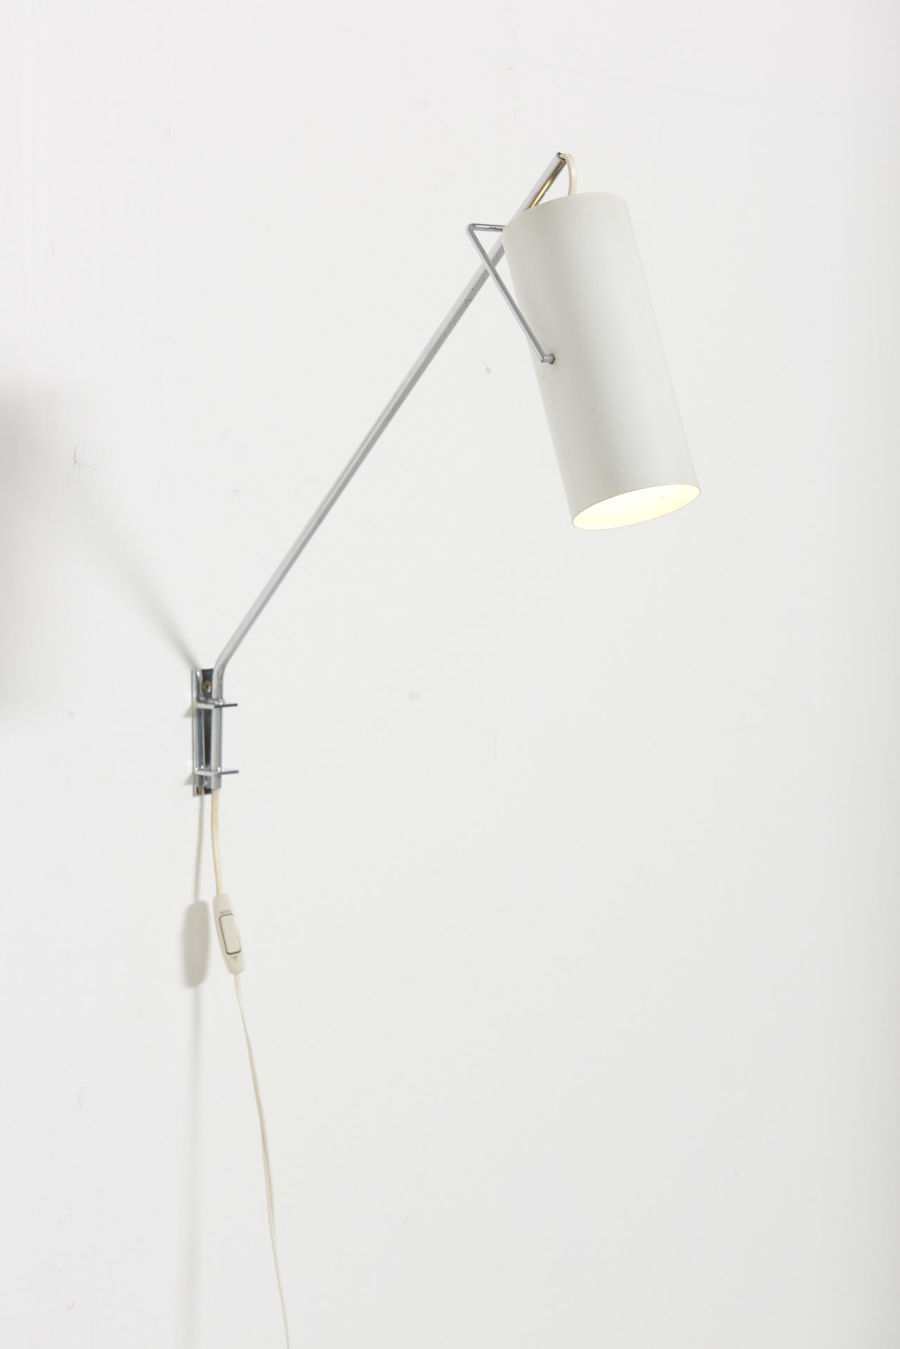 modestfurniture-vintage-2876-raak-swing-arm-wall-lamp-model-model-c1582-3702